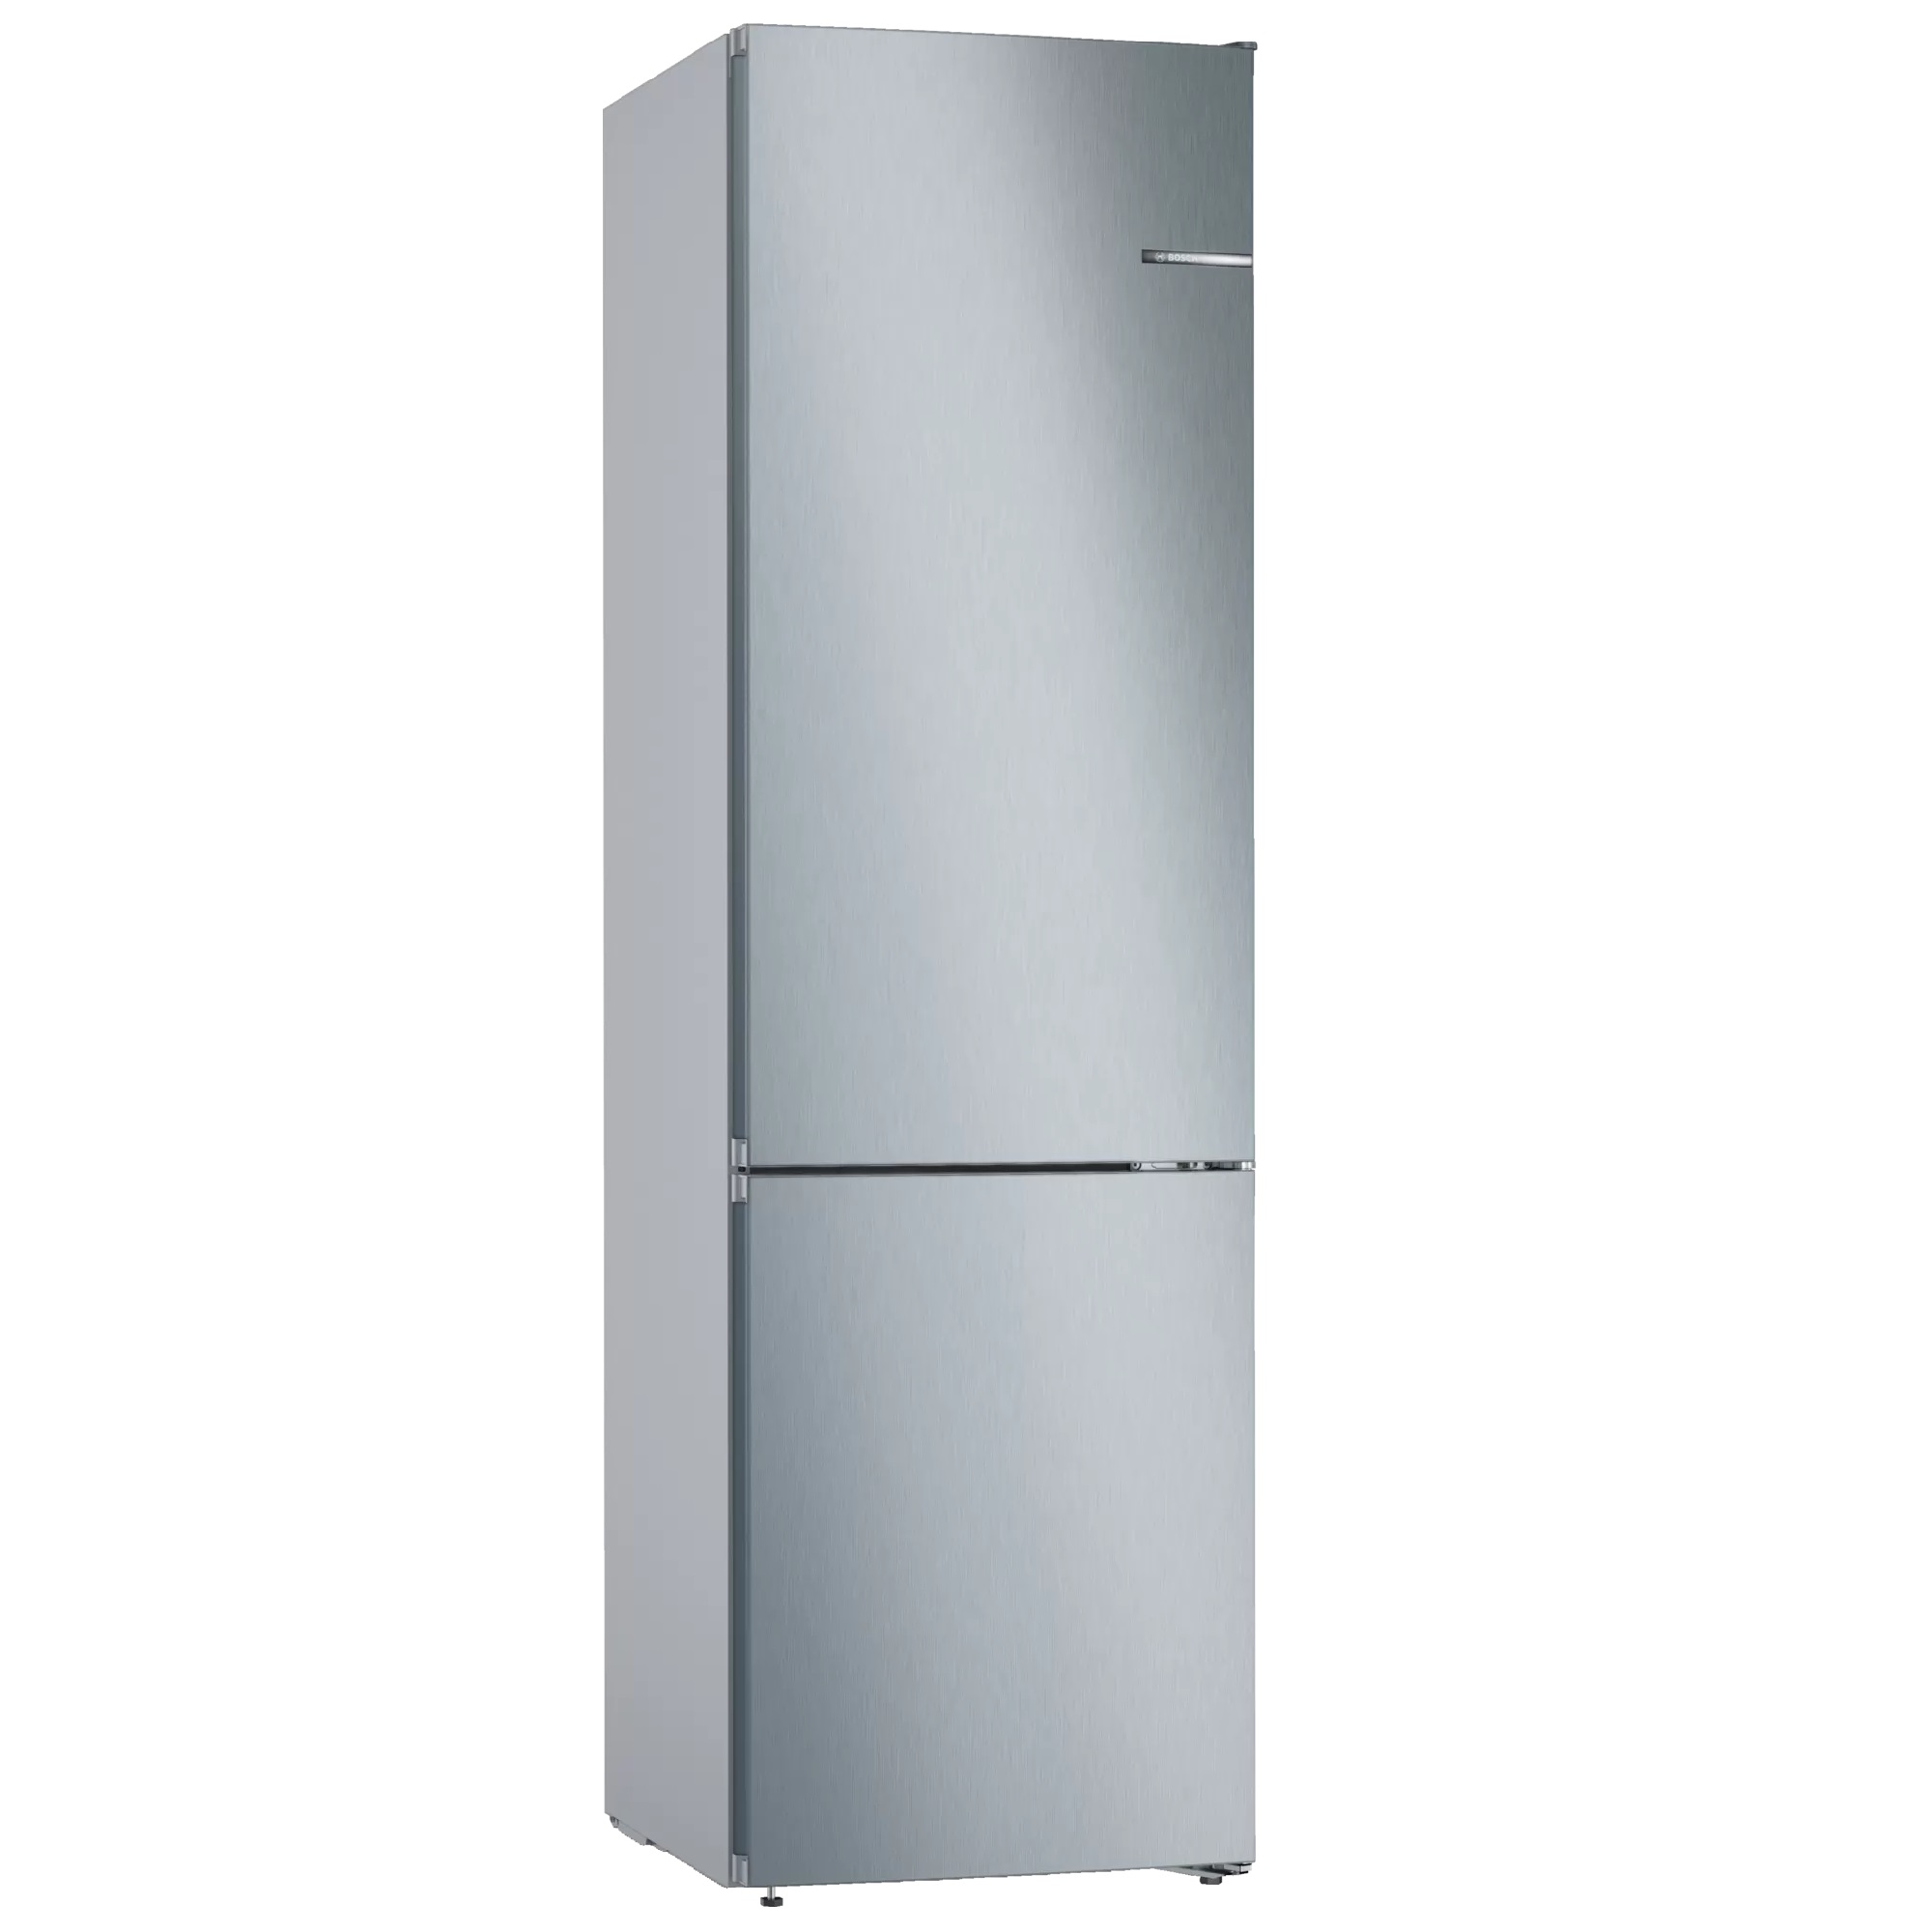 Холодильник двухкамерный купить в днс. Холодильник Bosch kgn39vl25r. Холодильник Bosch kgn39xi27r. Холодильник Bosch serie 4 VITAFRESH. Холодильник Bosch serie 4 kgn39vl24r.